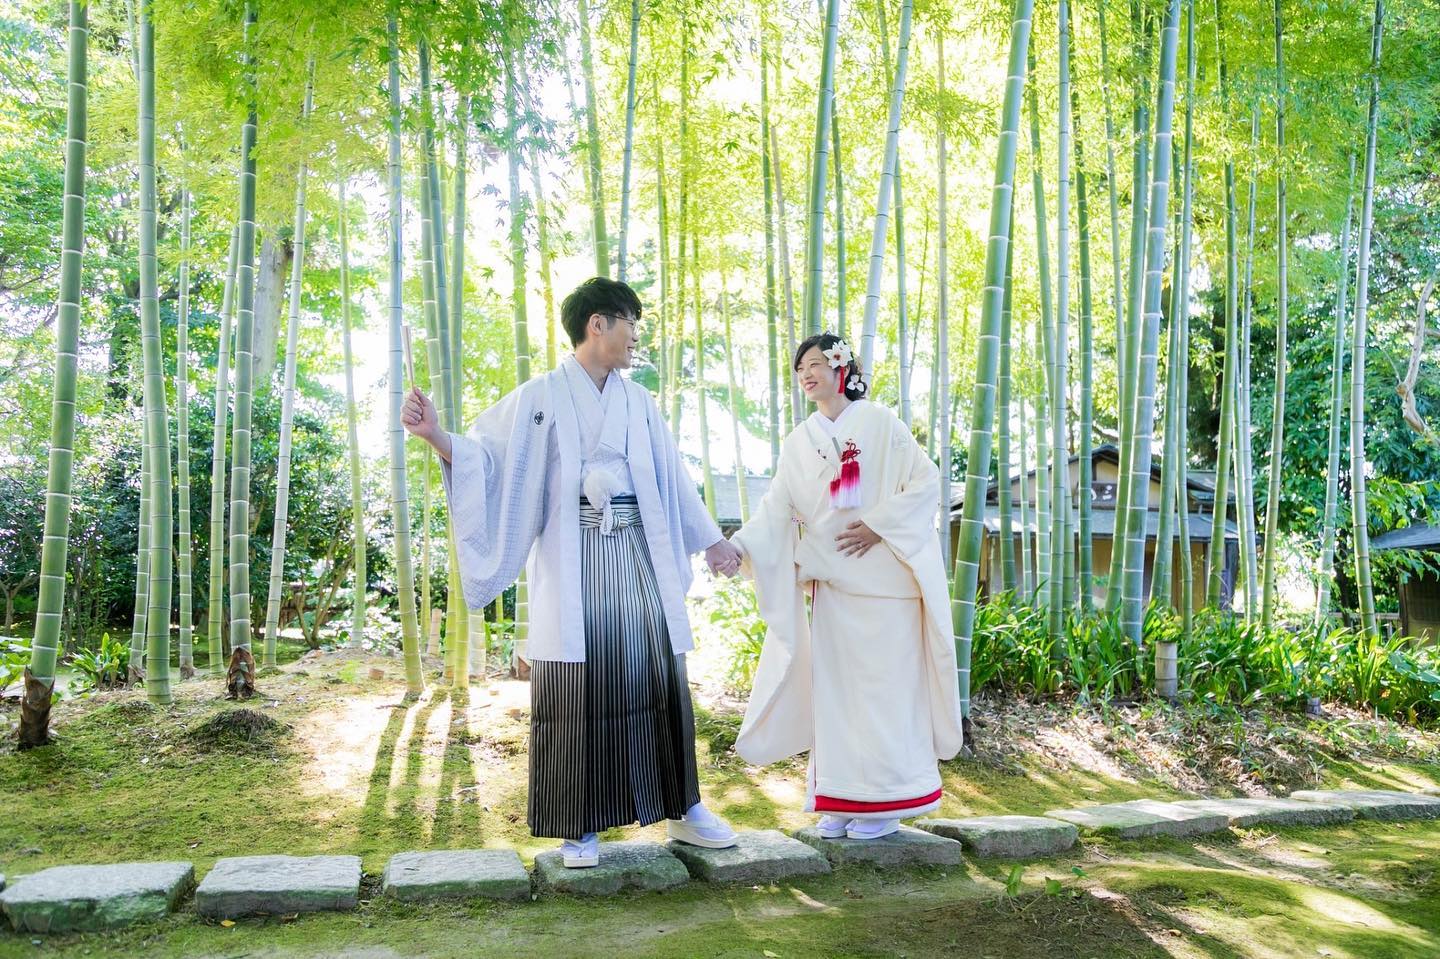 富山県の結婚式の写真撮りならブライダルハウスひまわりが値段も安く、衣裳もこだわりのものが揃う